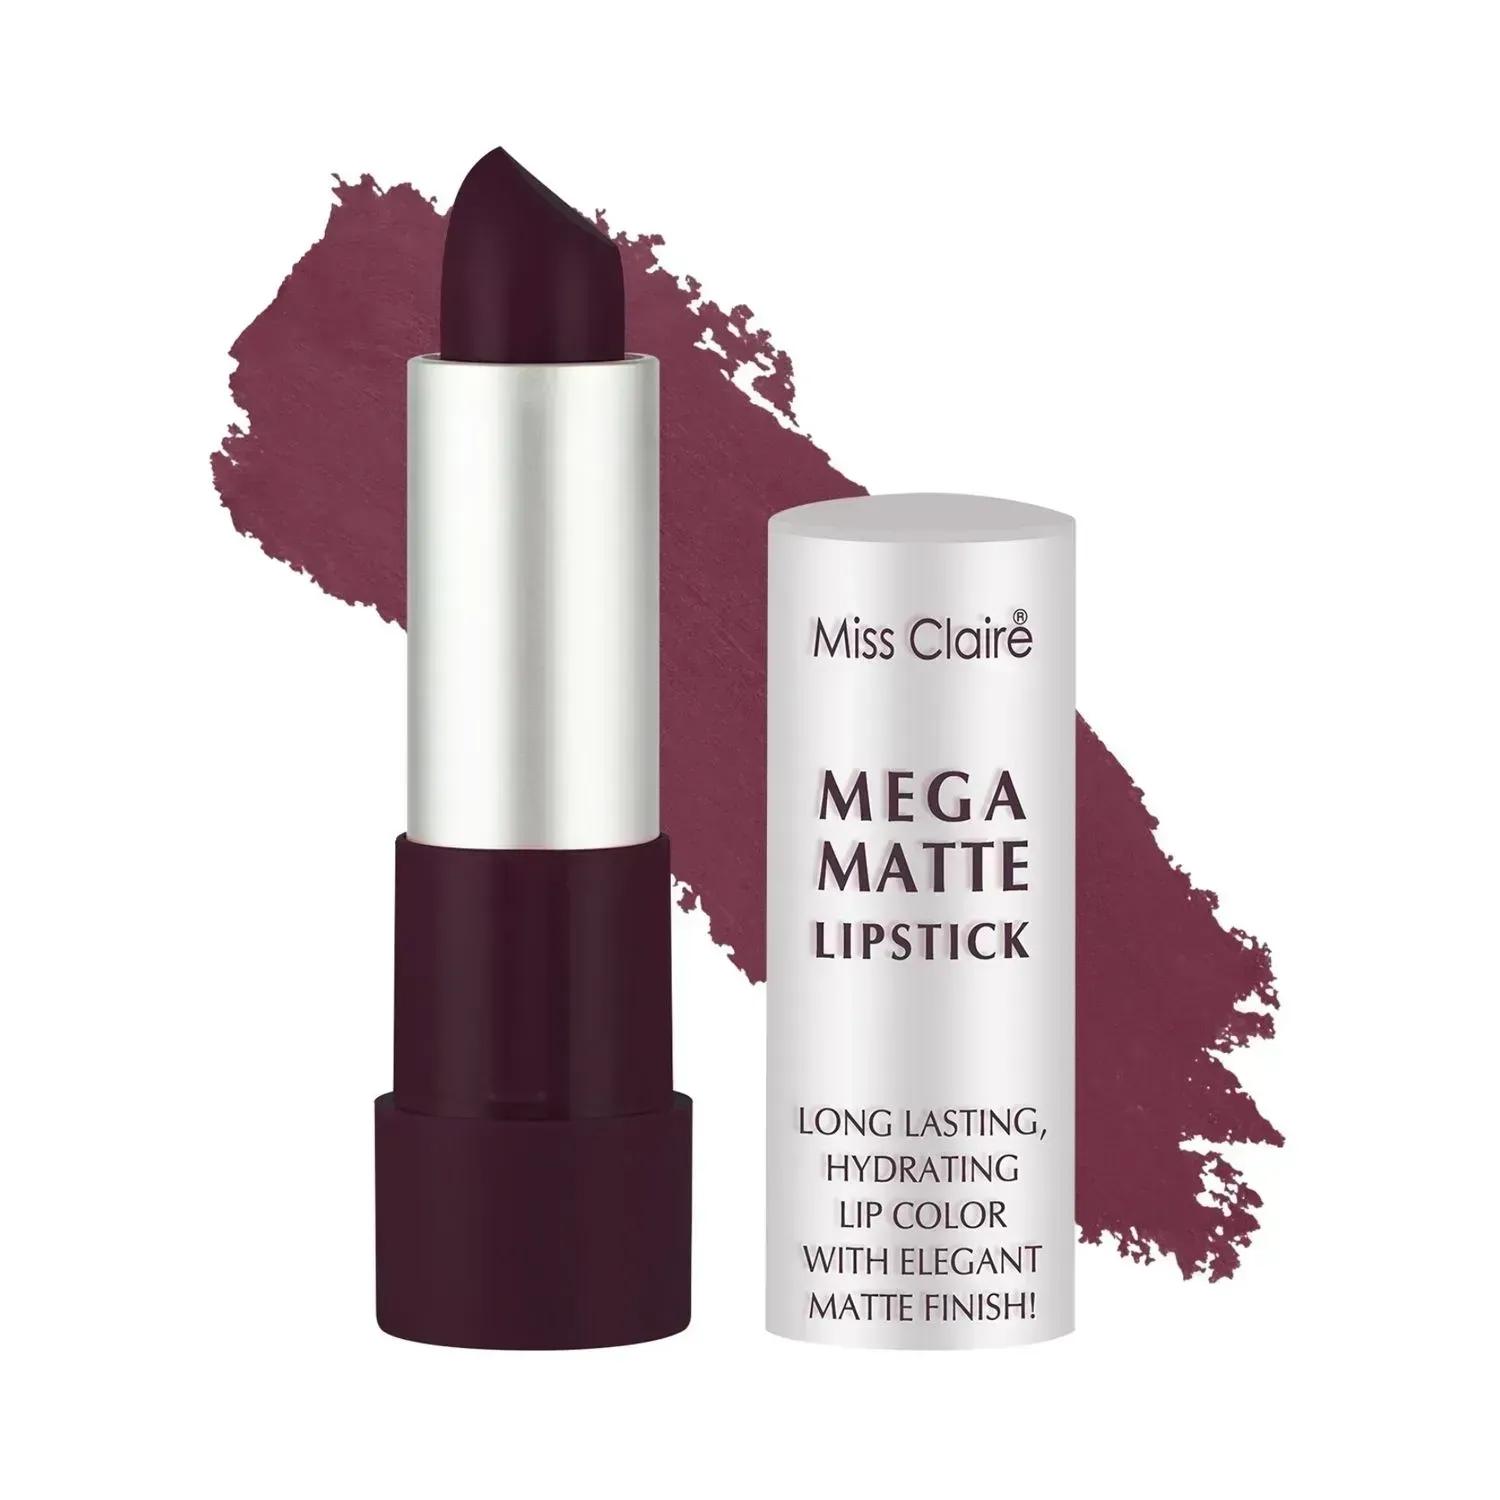 miss claire mega matte lipstick - 20 purple (3.5g)